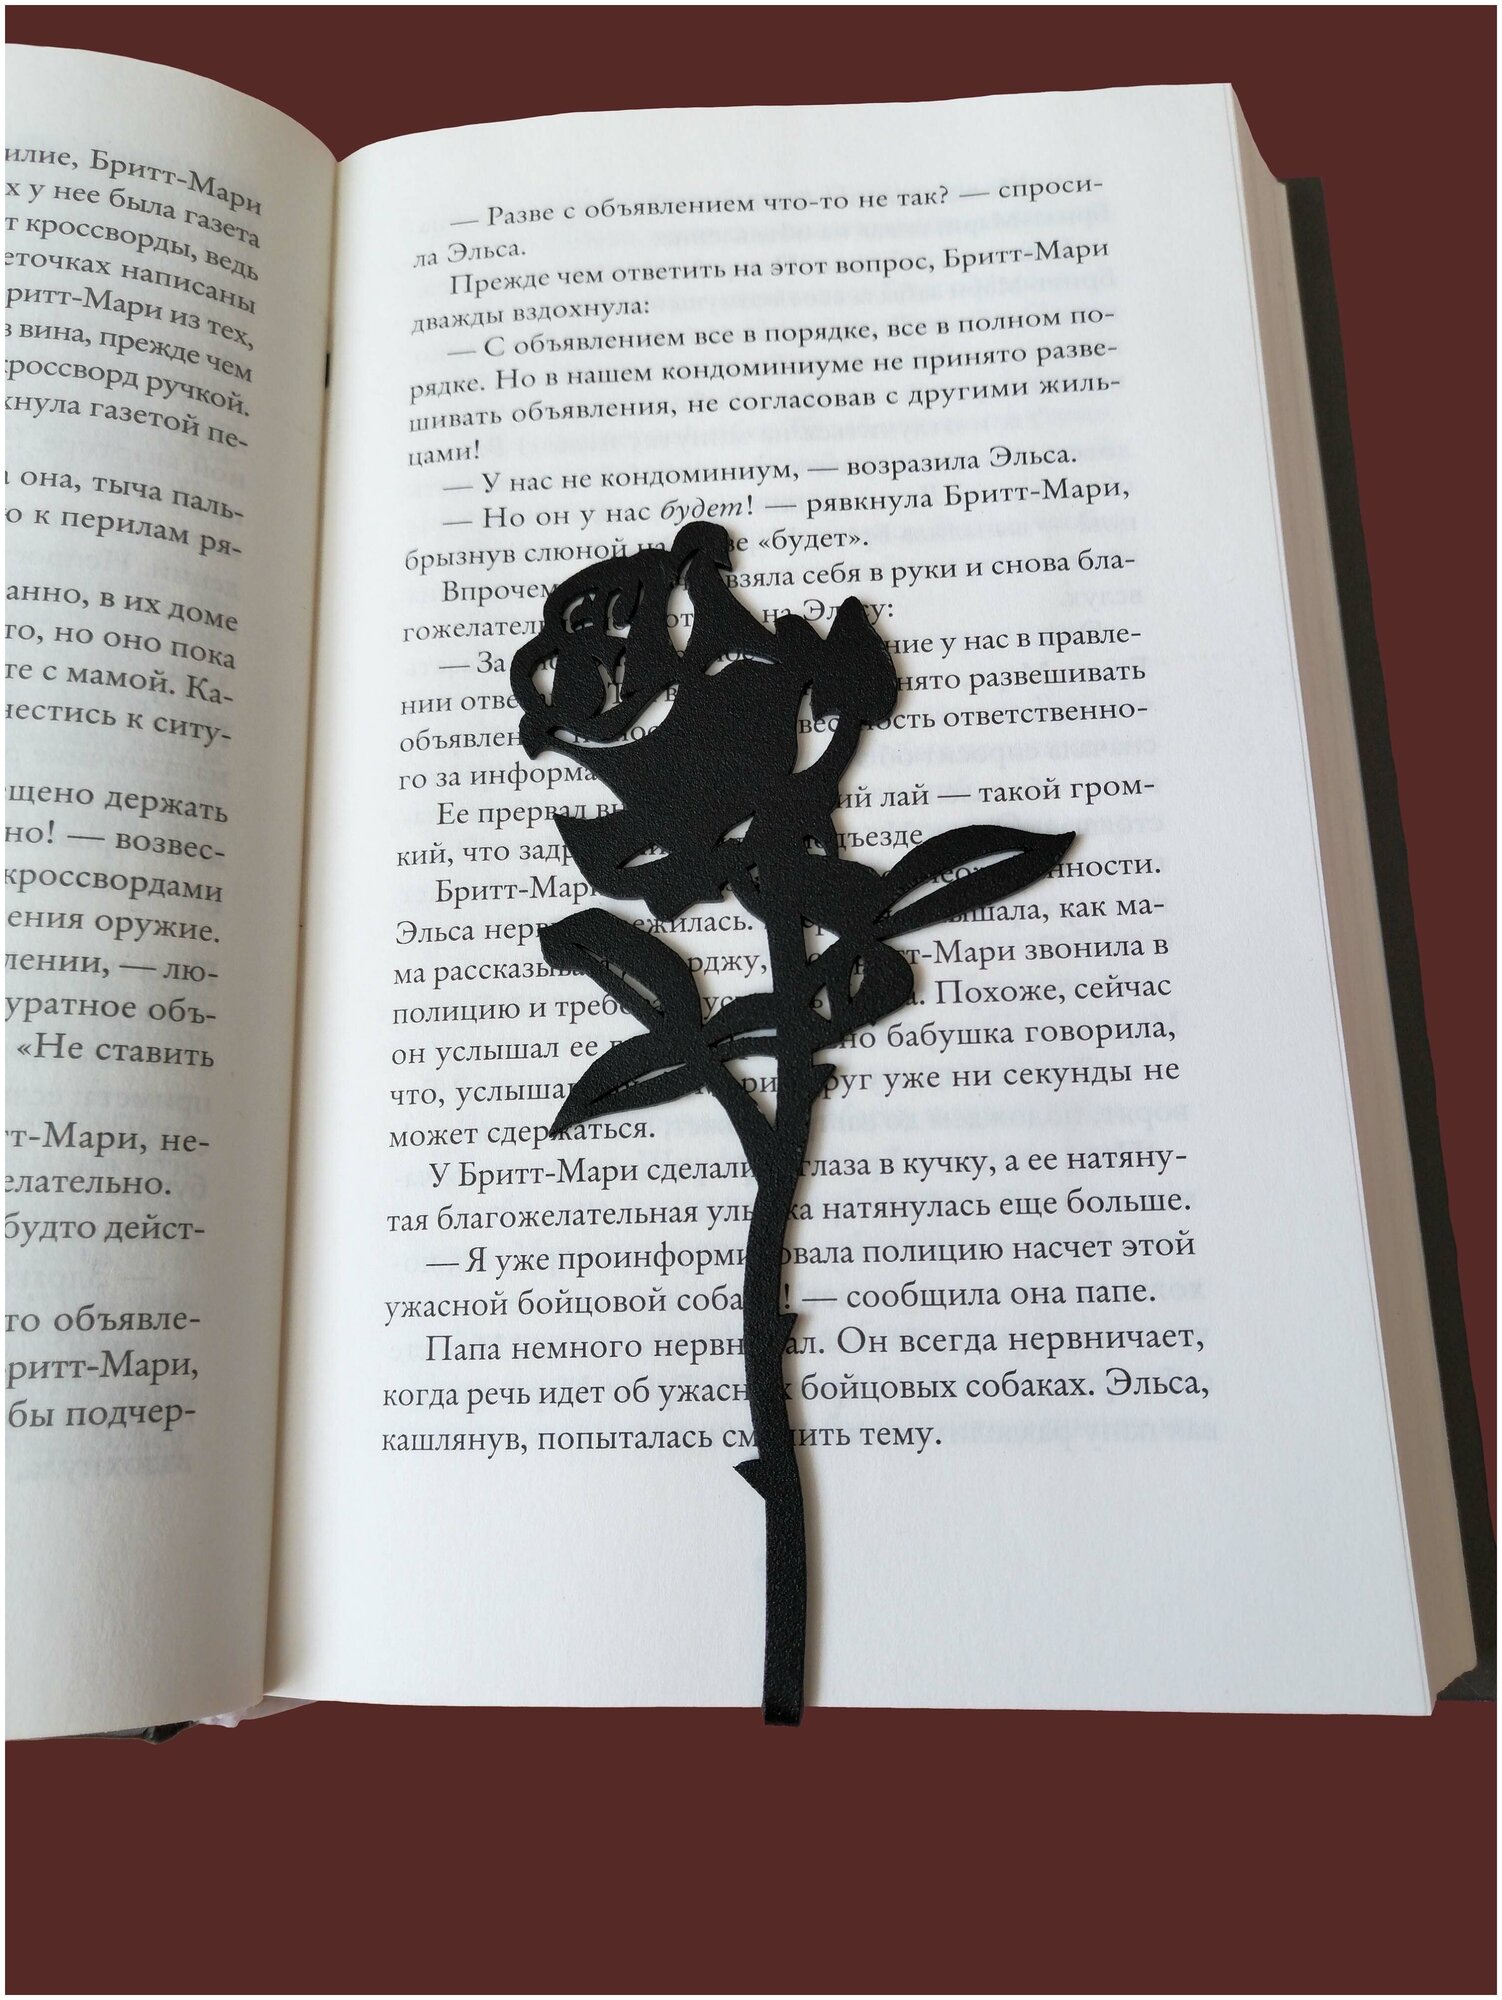 Закладка для книг «Роза», металл, цв. чёрный